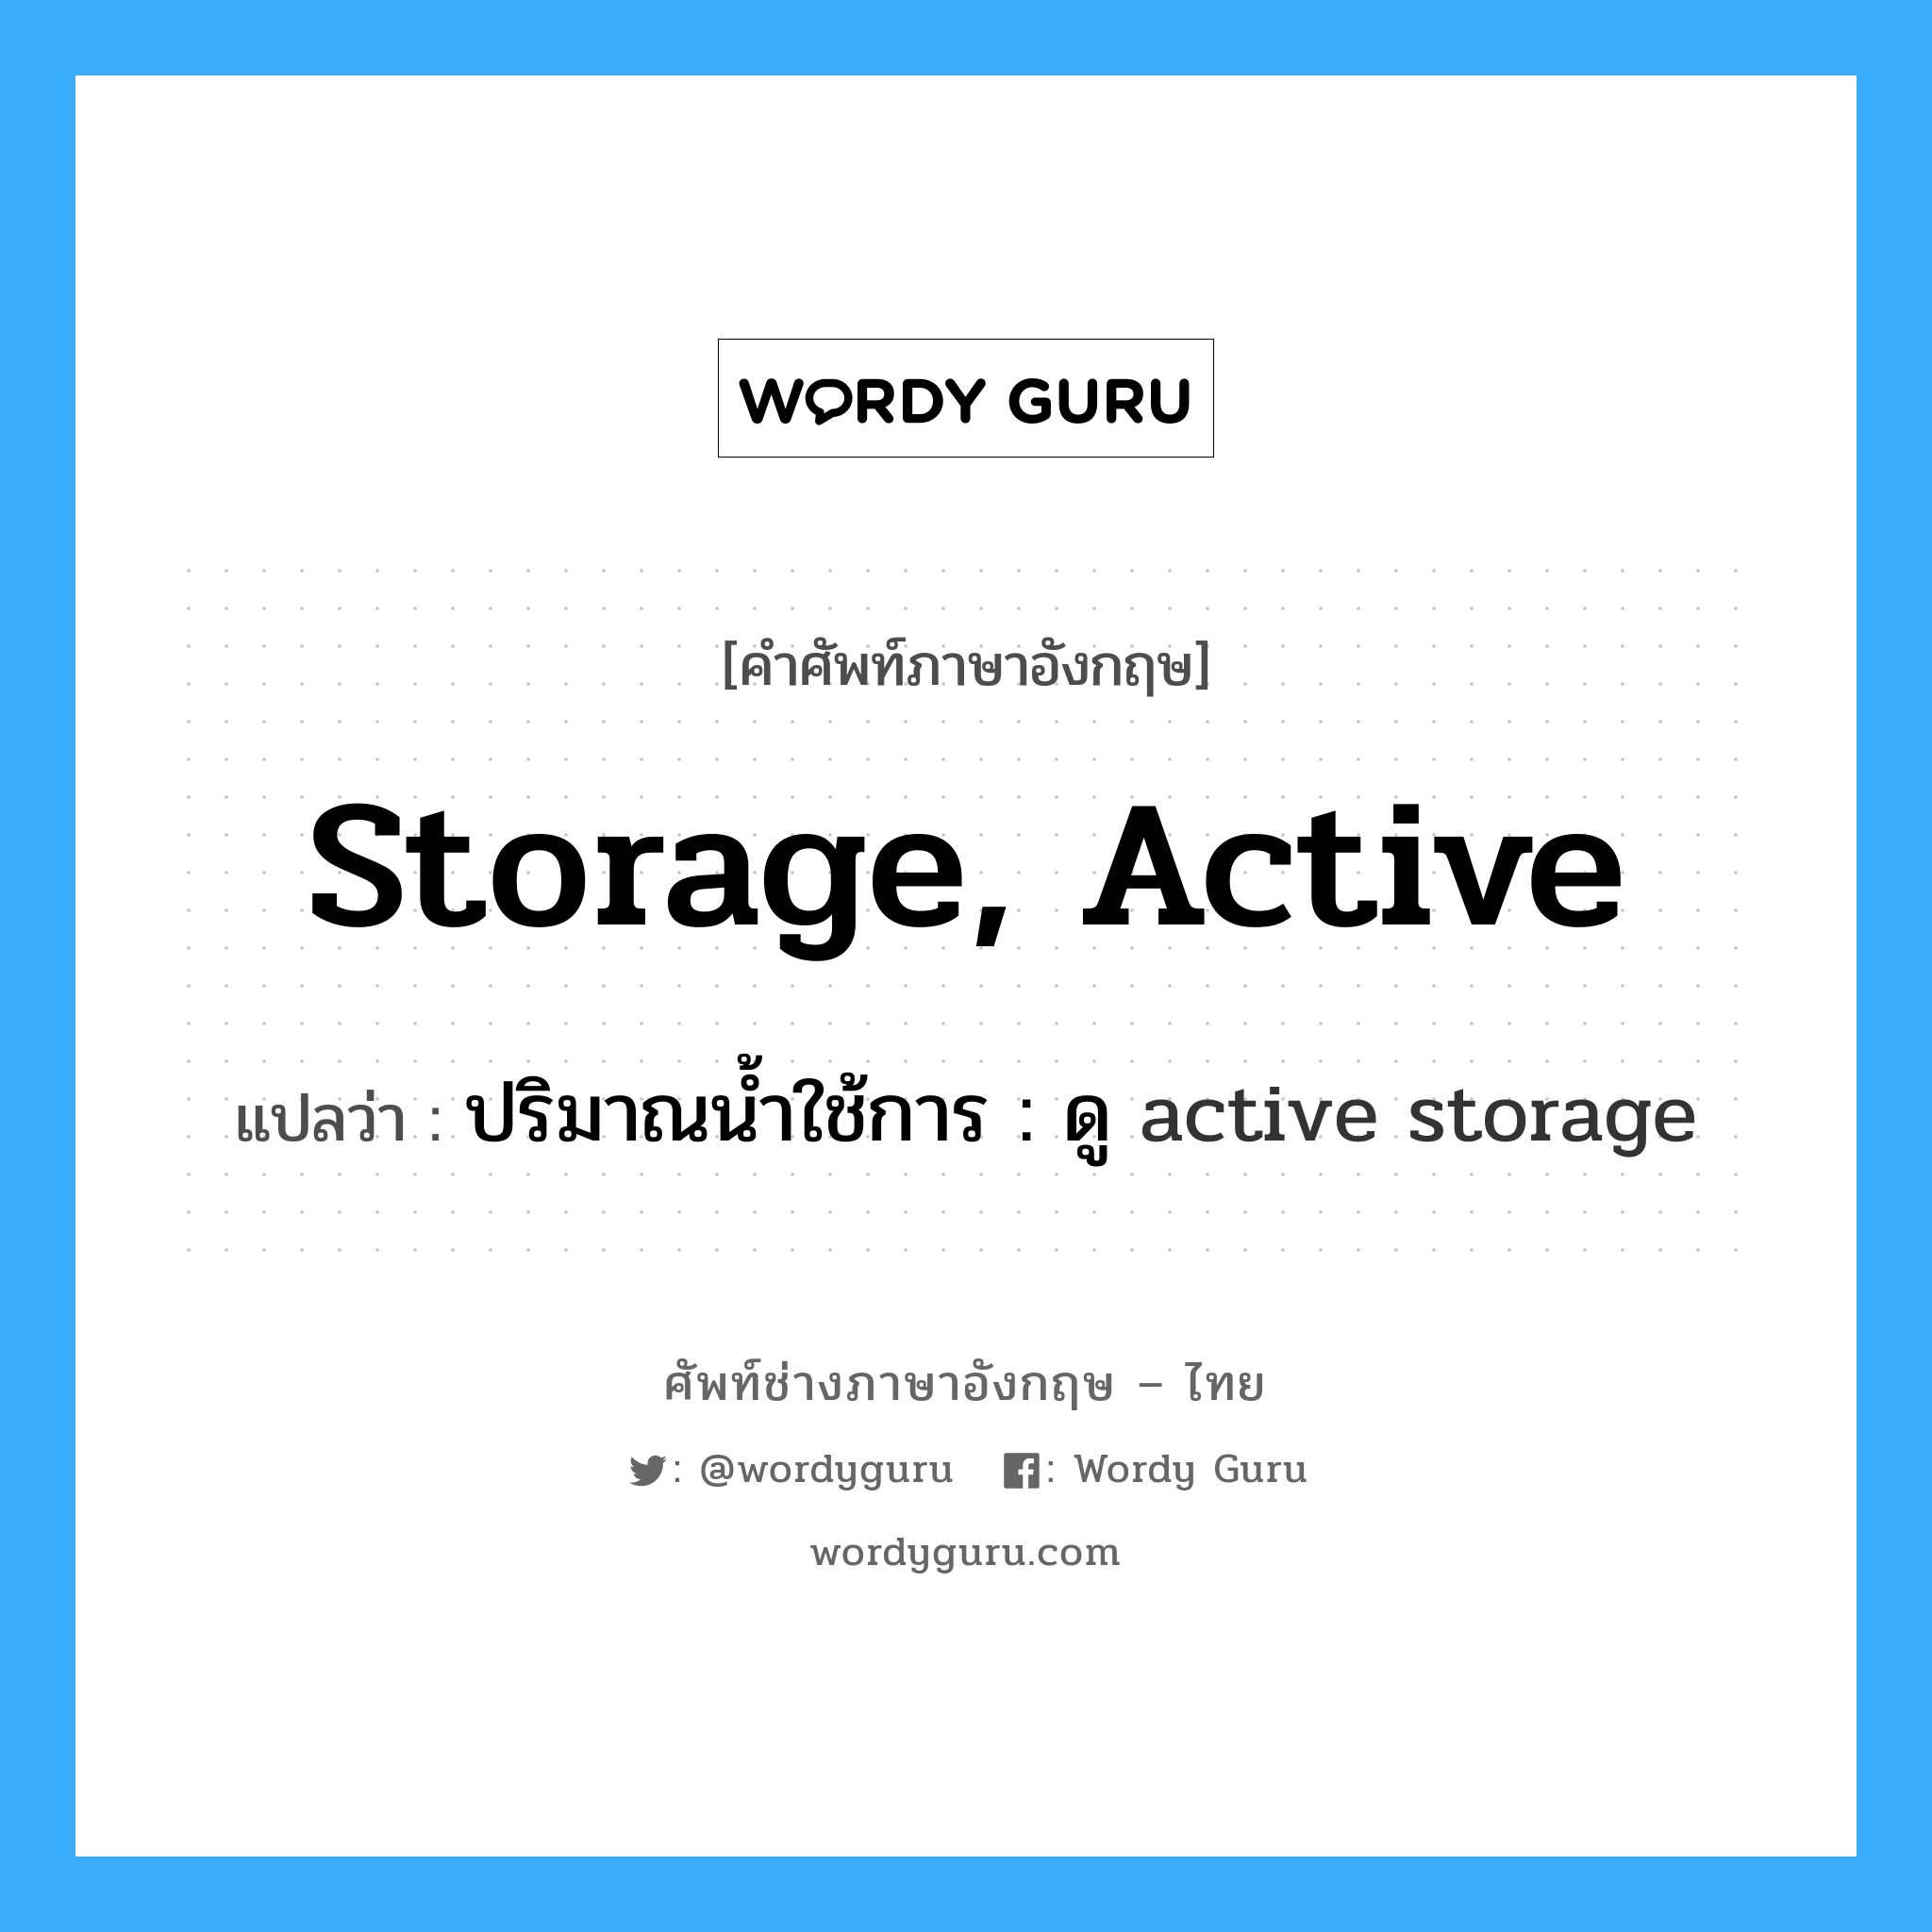 ปริมาณน้ำใช้การ : ดู active storage ภาษาอังกฤษ?, คำศัพท์ช่างภาษาอังกฤษ - ไทย ปริมาณน้ำใช้การ : ดู active storage คำศัพท์ภาษาอังกฤษ ปริมาณน้ำใช้การ : ดู active storage แปลว่า storage, active